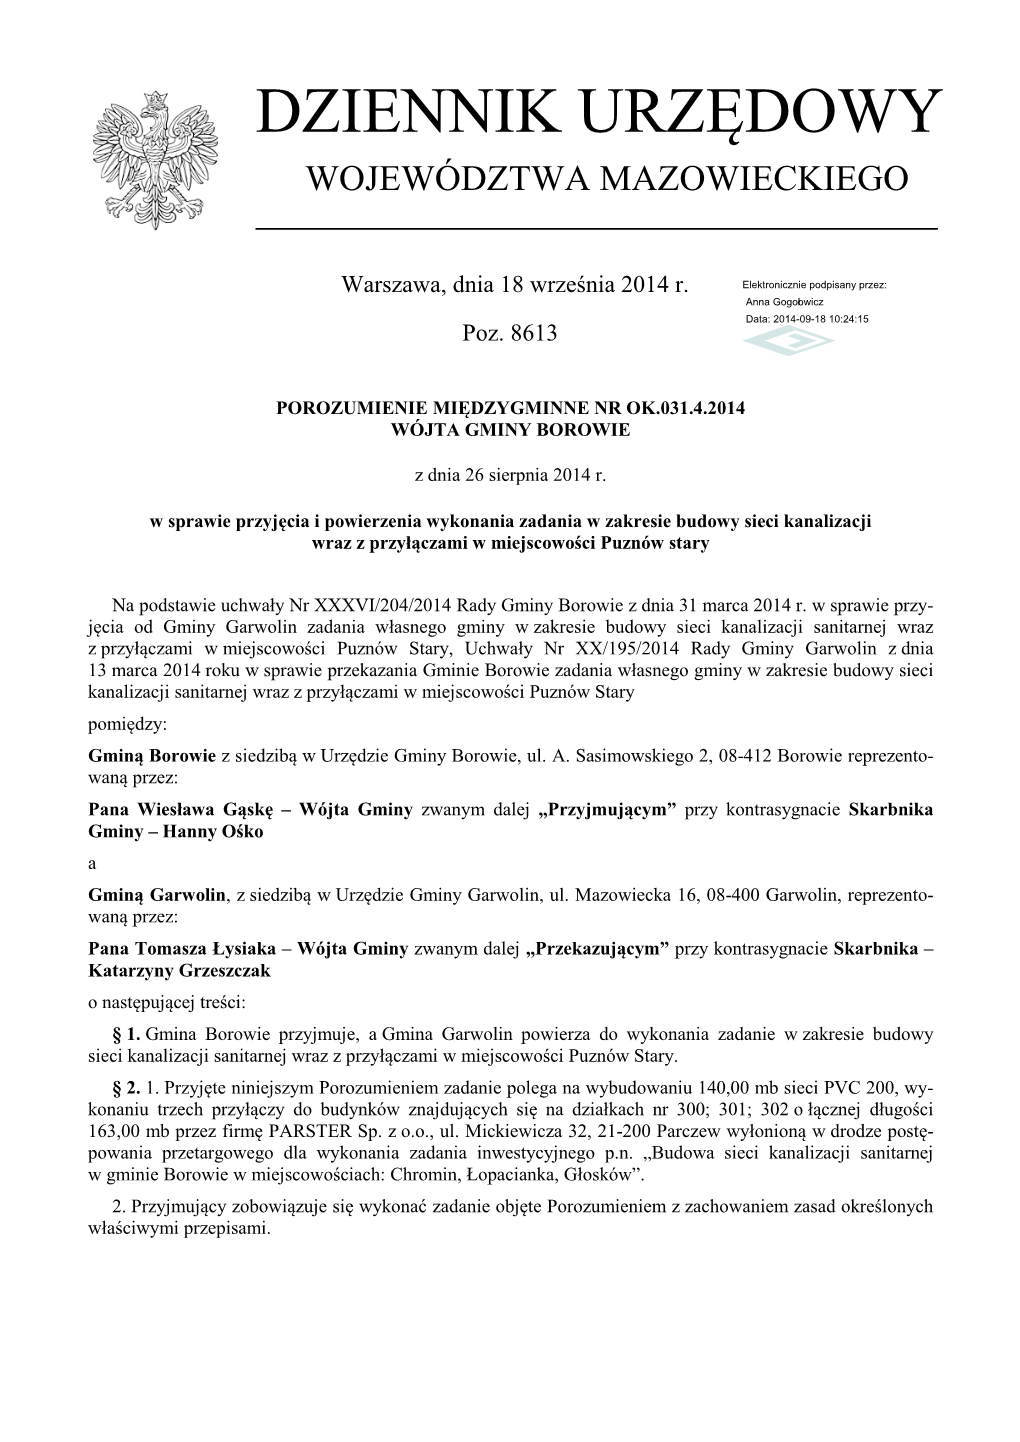 Porozumienie Międzygminne Nr OK.031.4.2014 Z Dnia 26 Sierpnia